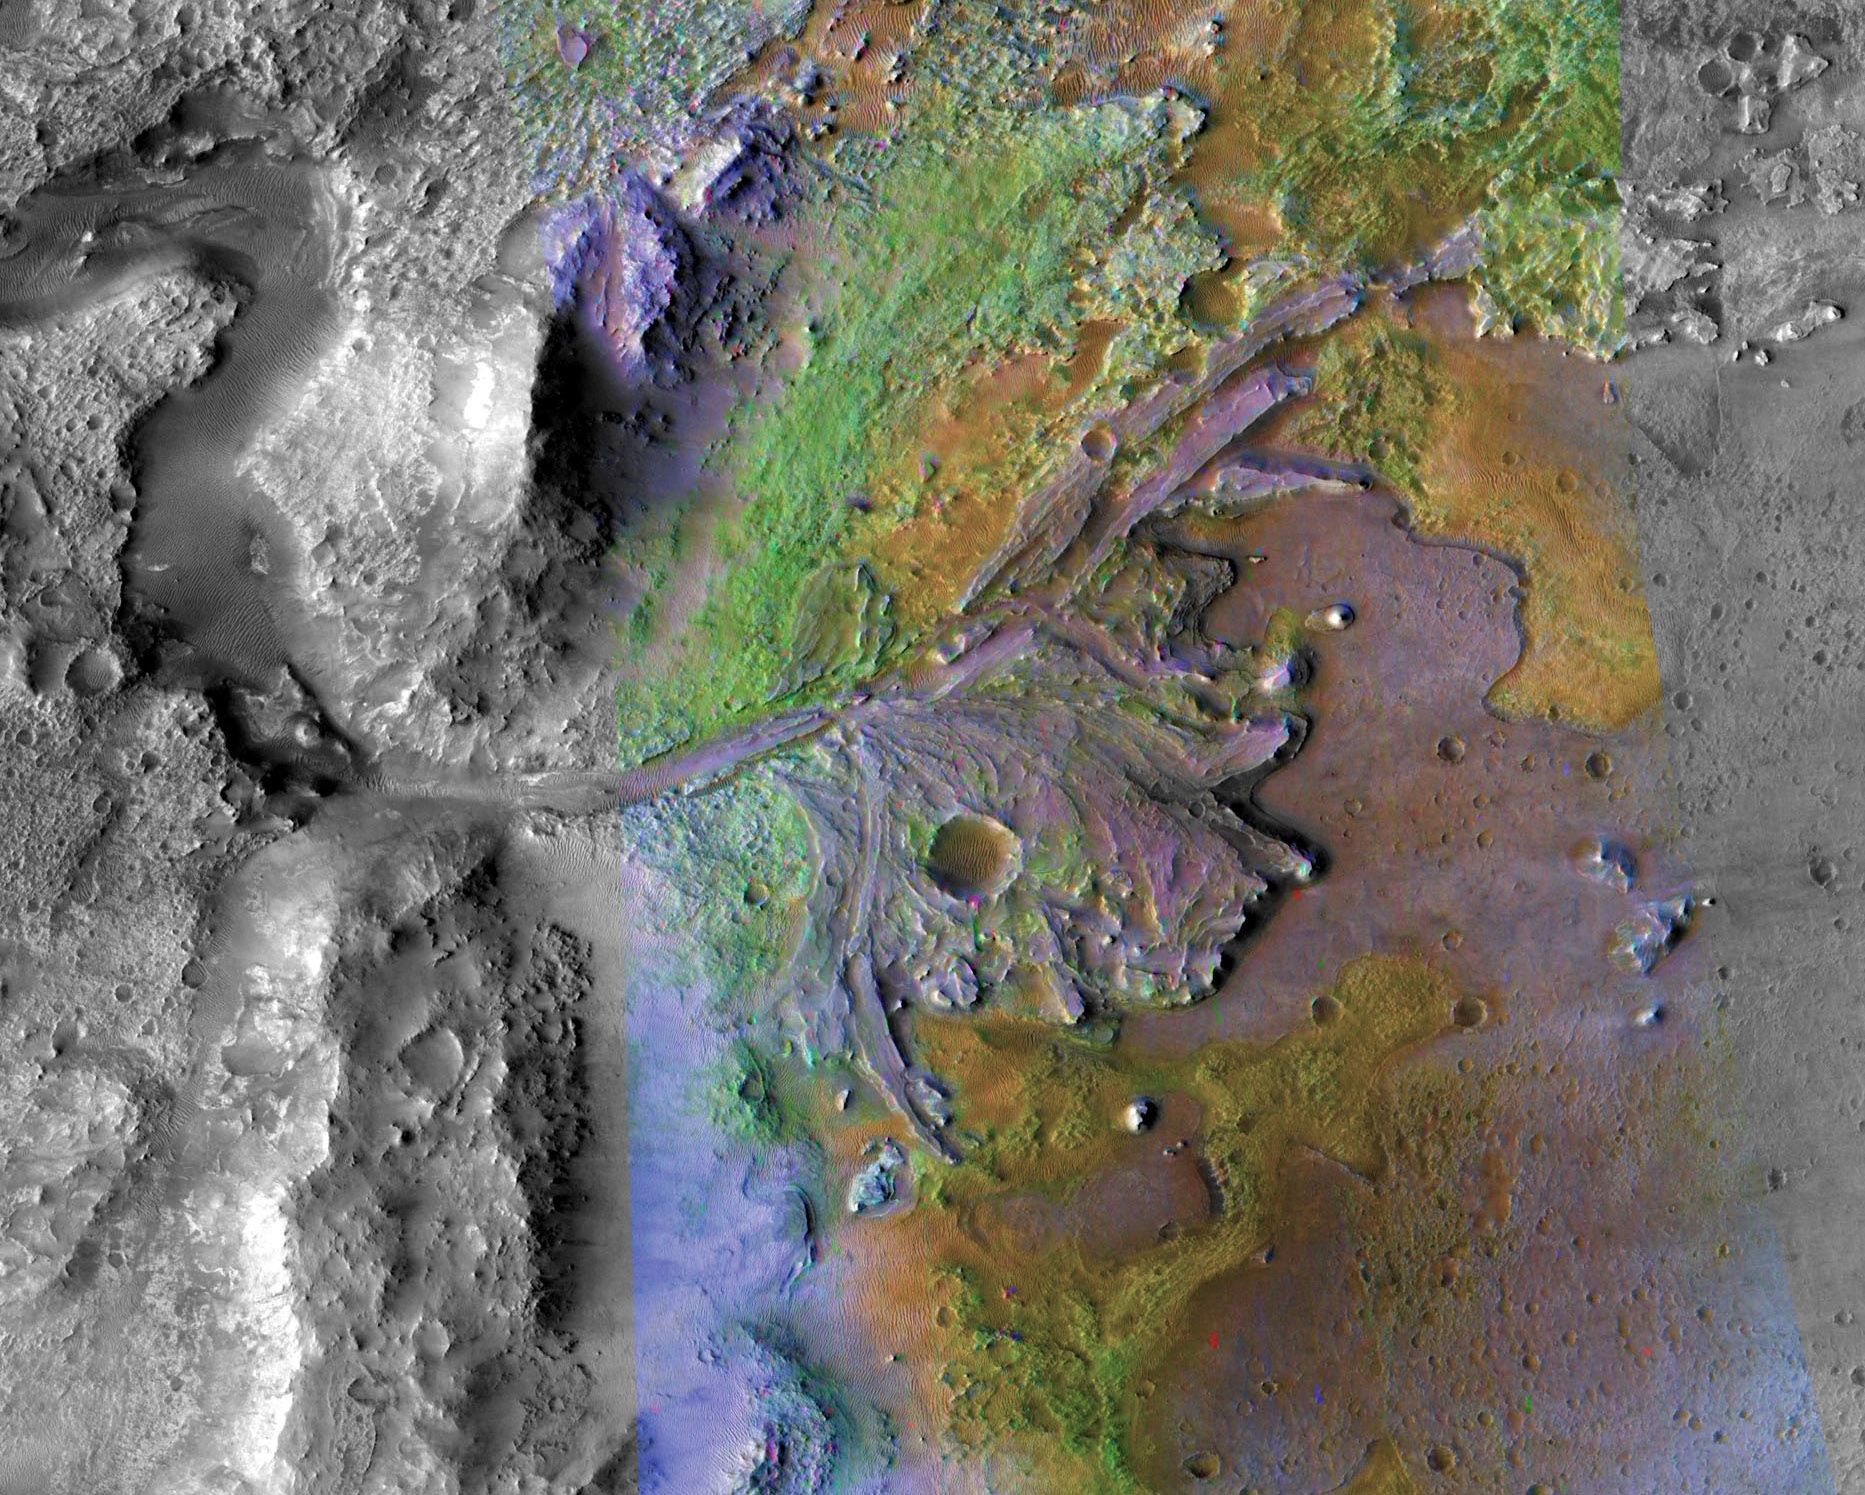 Íme a kráter a Marson, ahol megtalálhatjuk az egykori élet nyomait